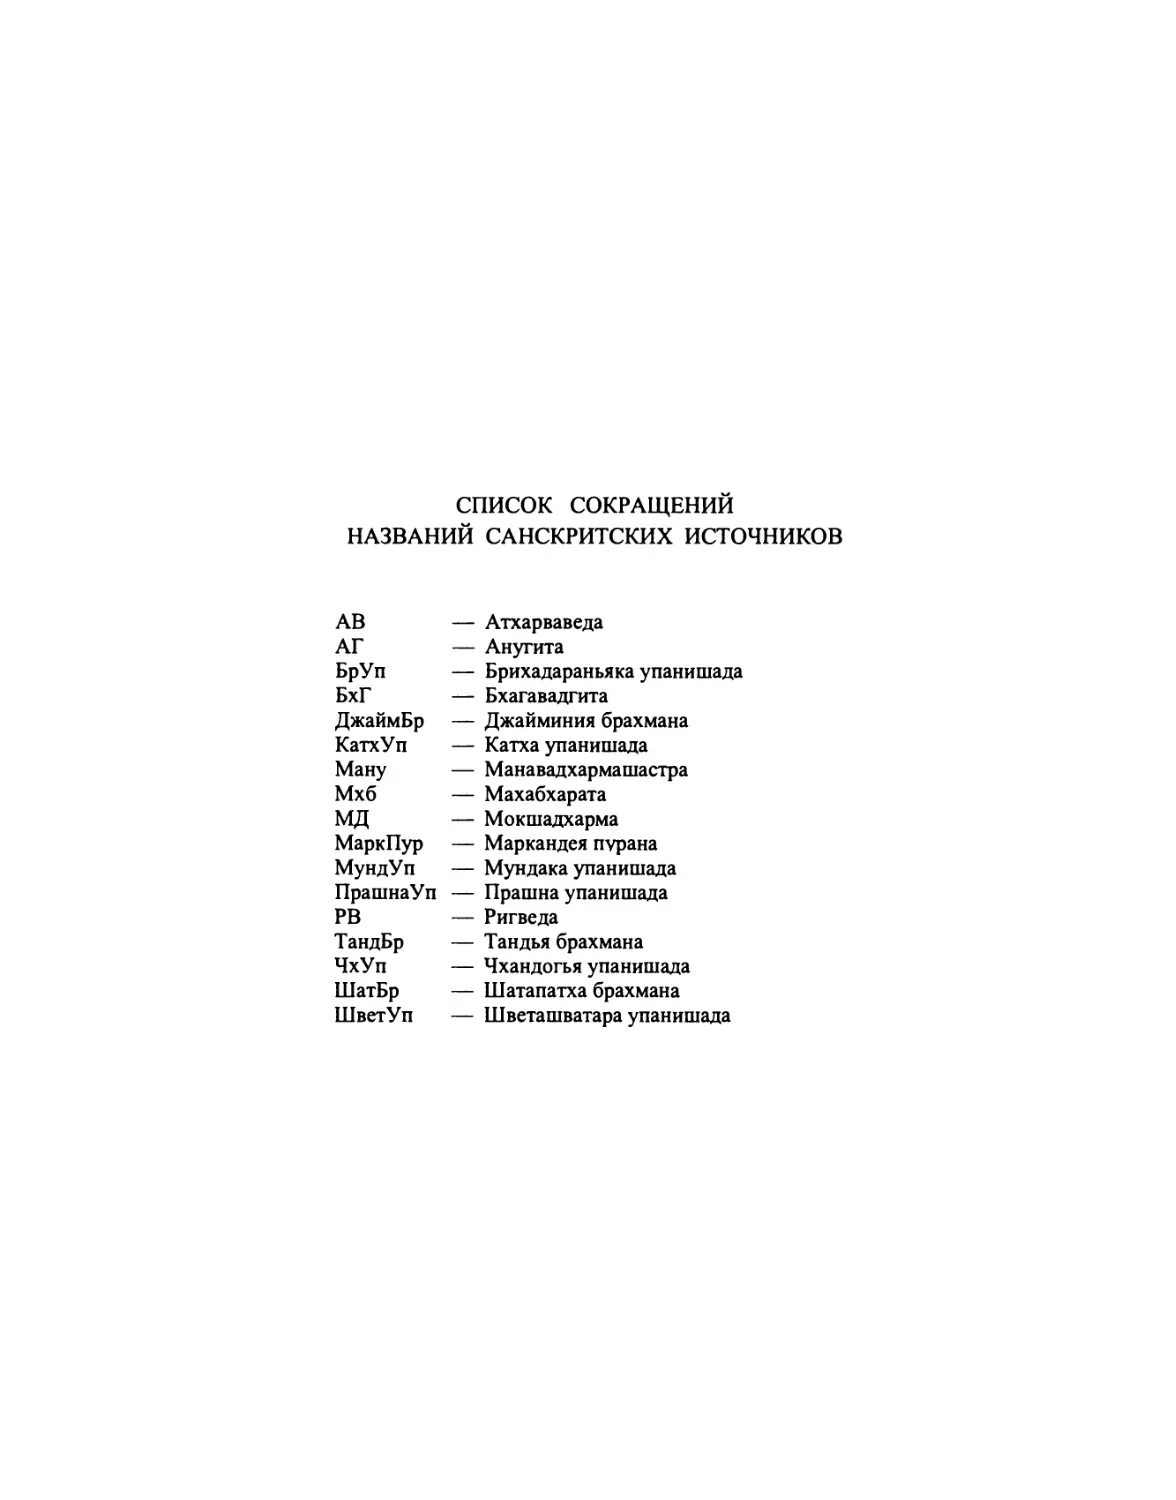 Список сокращений названий санскритских источников